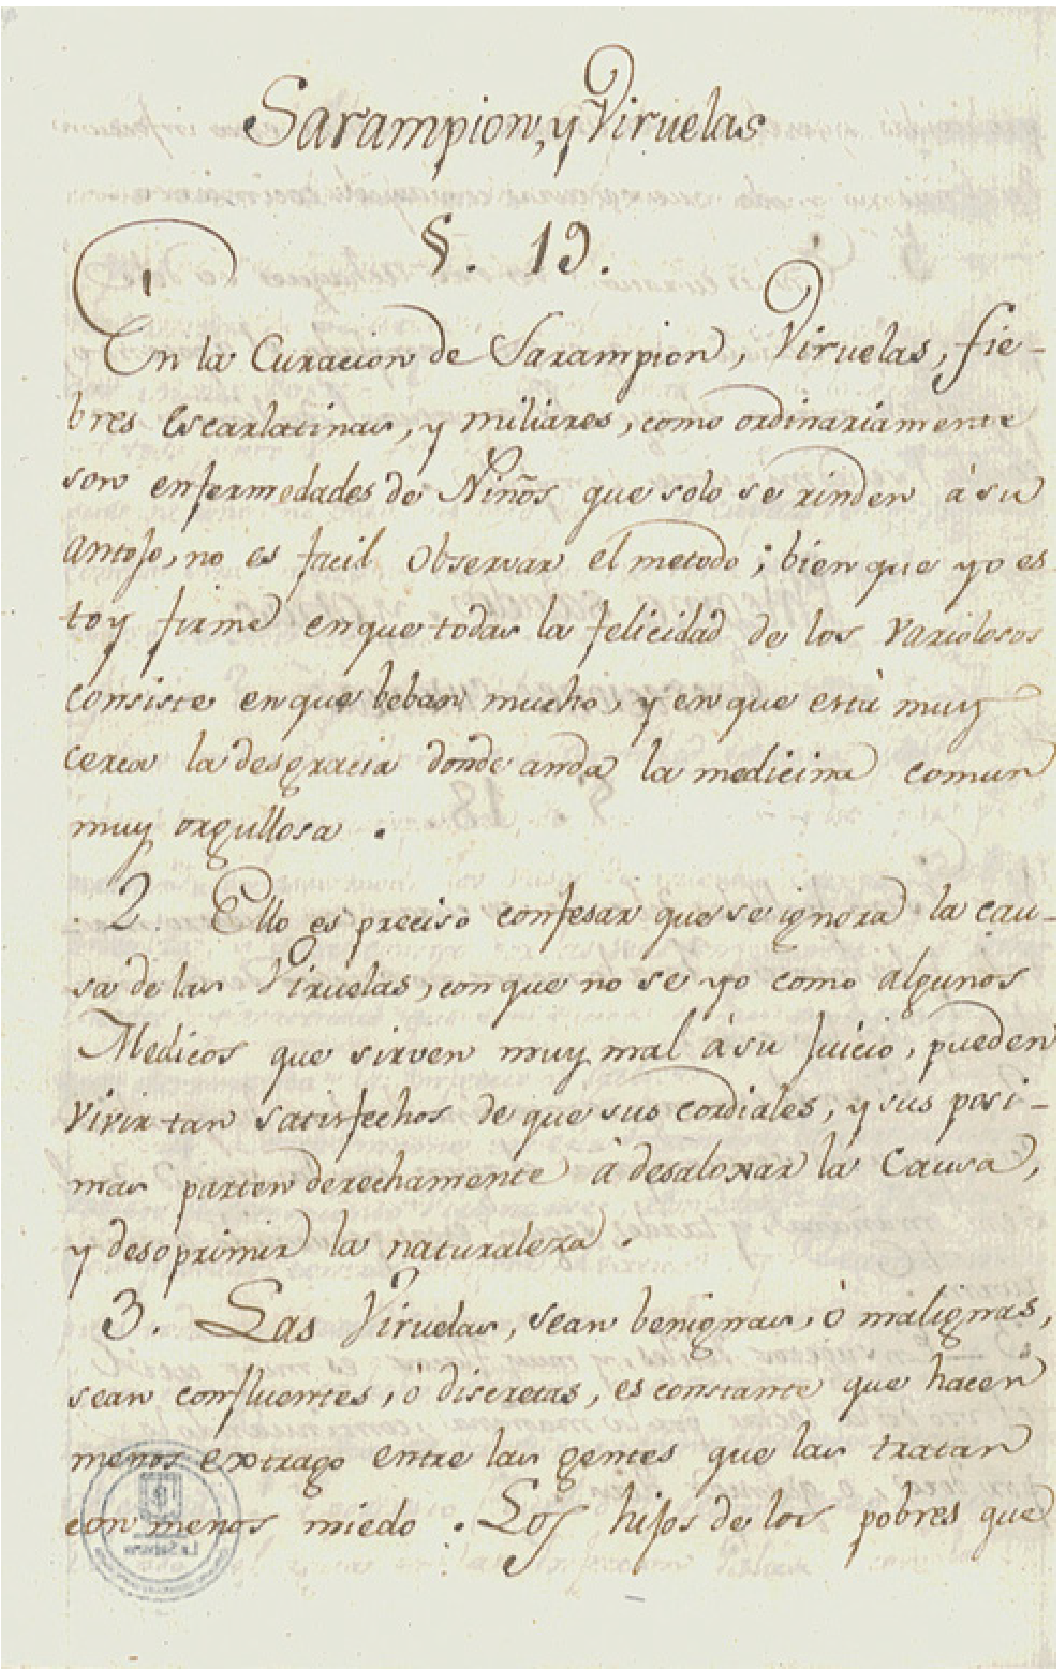 De curandis hominum morbis: una receta médica del siglo XVIII para el  sarampión y las viruelas en el Nuevo Reino de Granada | Biomédica